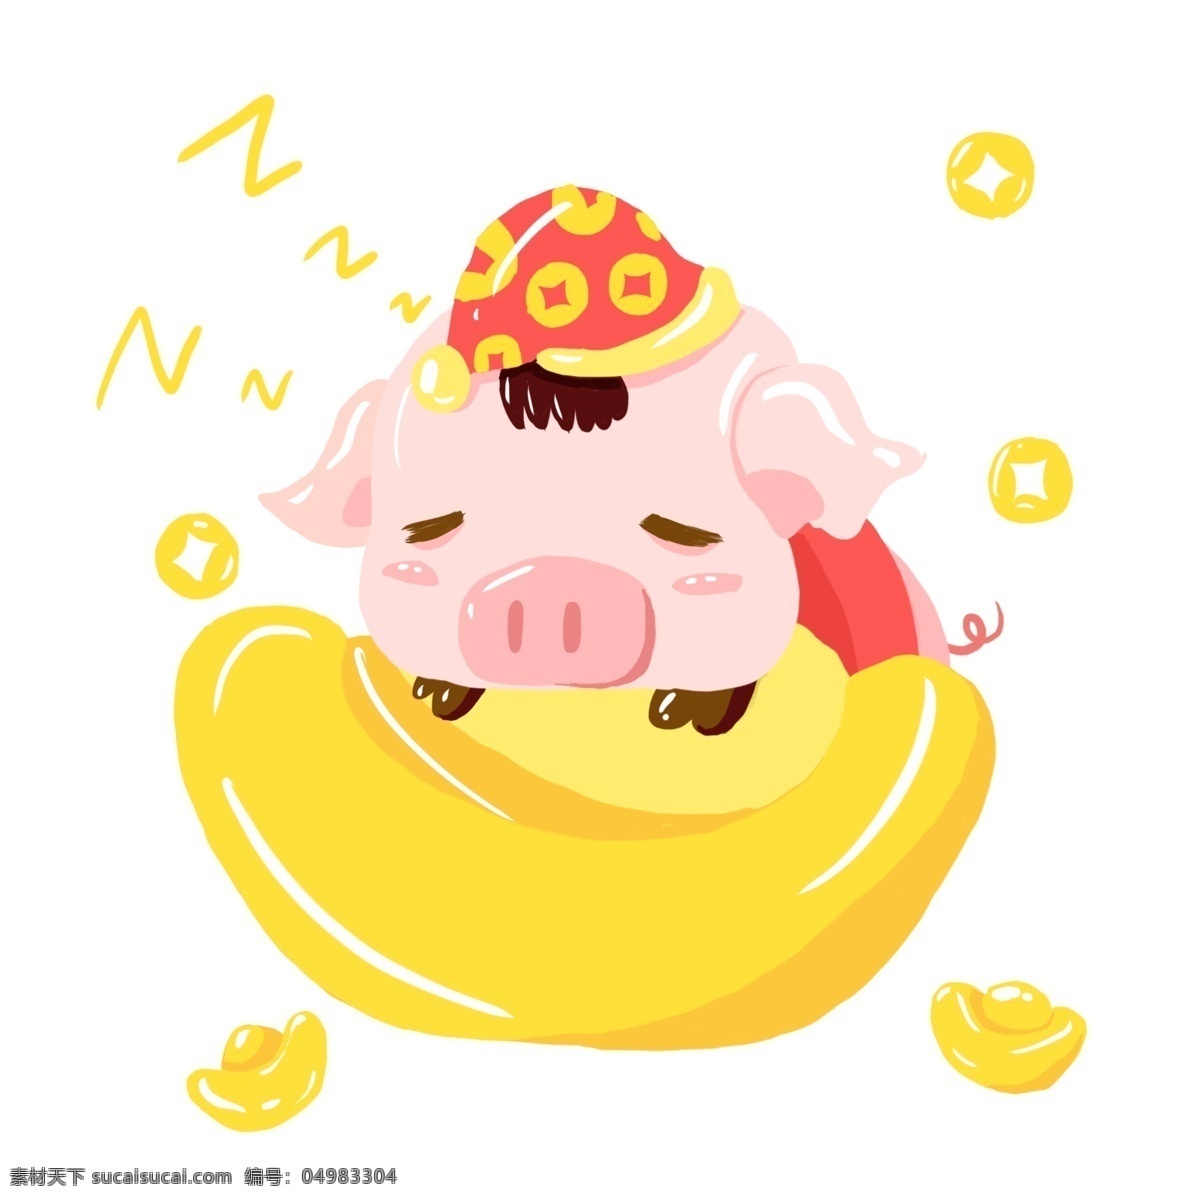 2019 猪年 新年 手绘 卡通 可爱 吉祥 猪 卡通猪 手绘猪 吉祥猪 可爱动物 可爱猪猪 拜年 新年猪 亥猪 元宝猪 金元宝